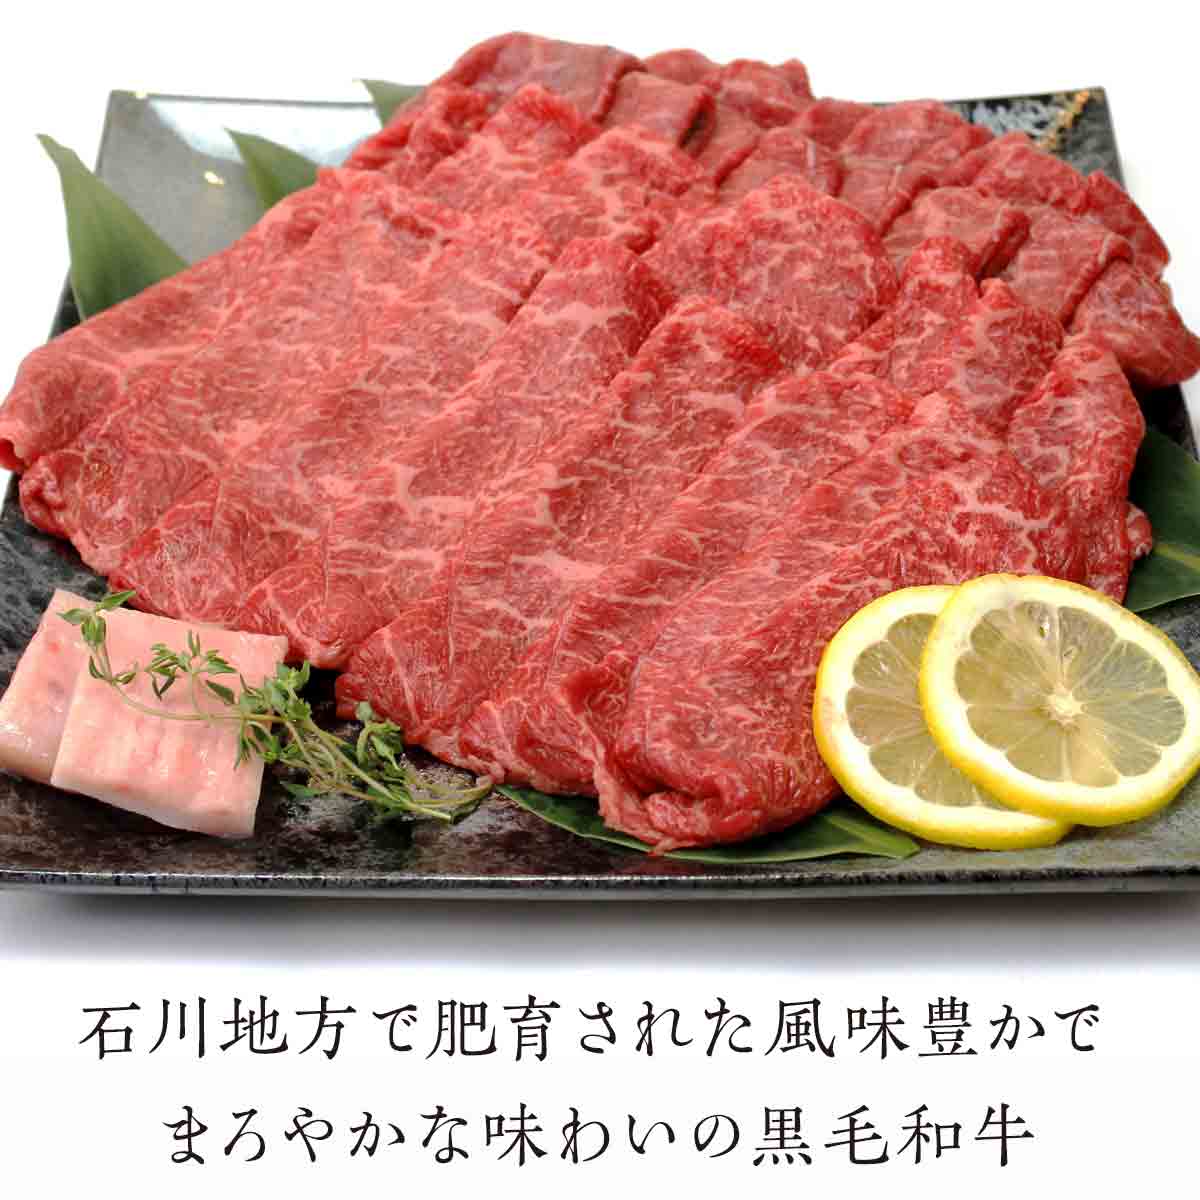 【ふるさと納税】 FT18-039 「いしかわ牛」または「福島牛」 モモ肉すき焼き用 400g×2